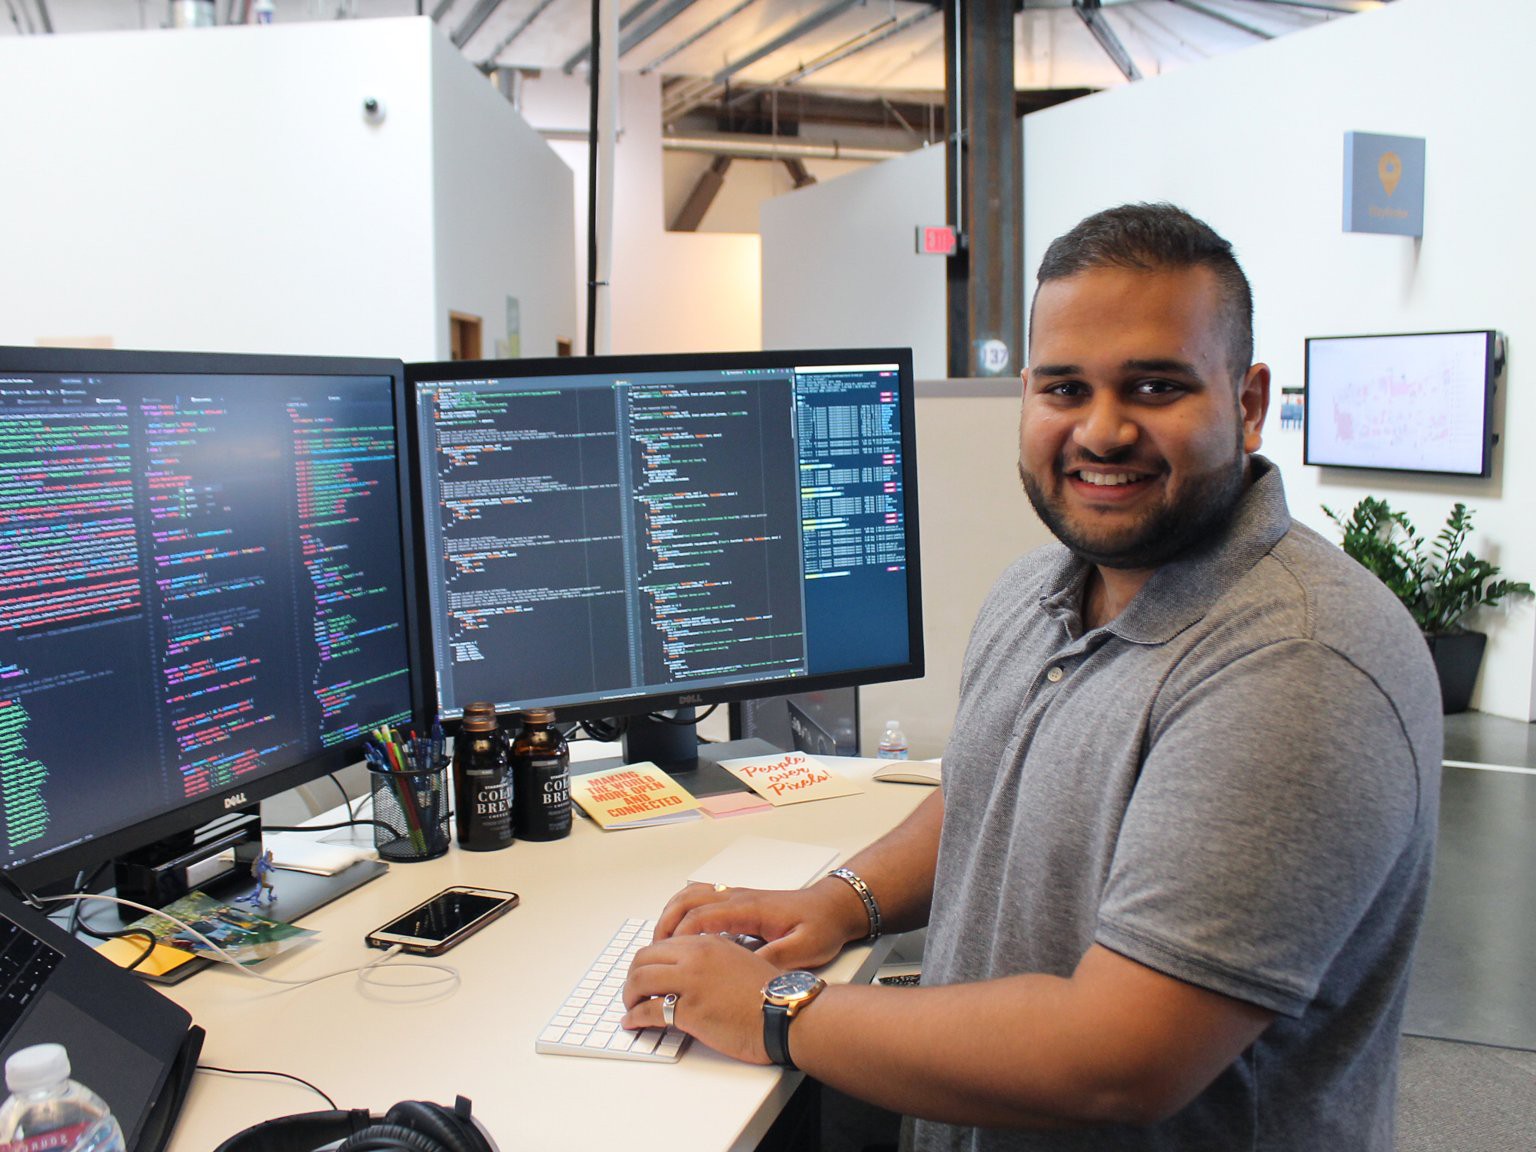 Danial Hussain, sinh viên Đại học Virginia đang thực tập kỹ sư phần mềm tại trụ sở chính của Facebook tại Menlo Park, California. Hussain thường đến chỗ làm vào lúc 8h sáng, ăn sáng rồi uống cà phê miễn phí ở công ty.